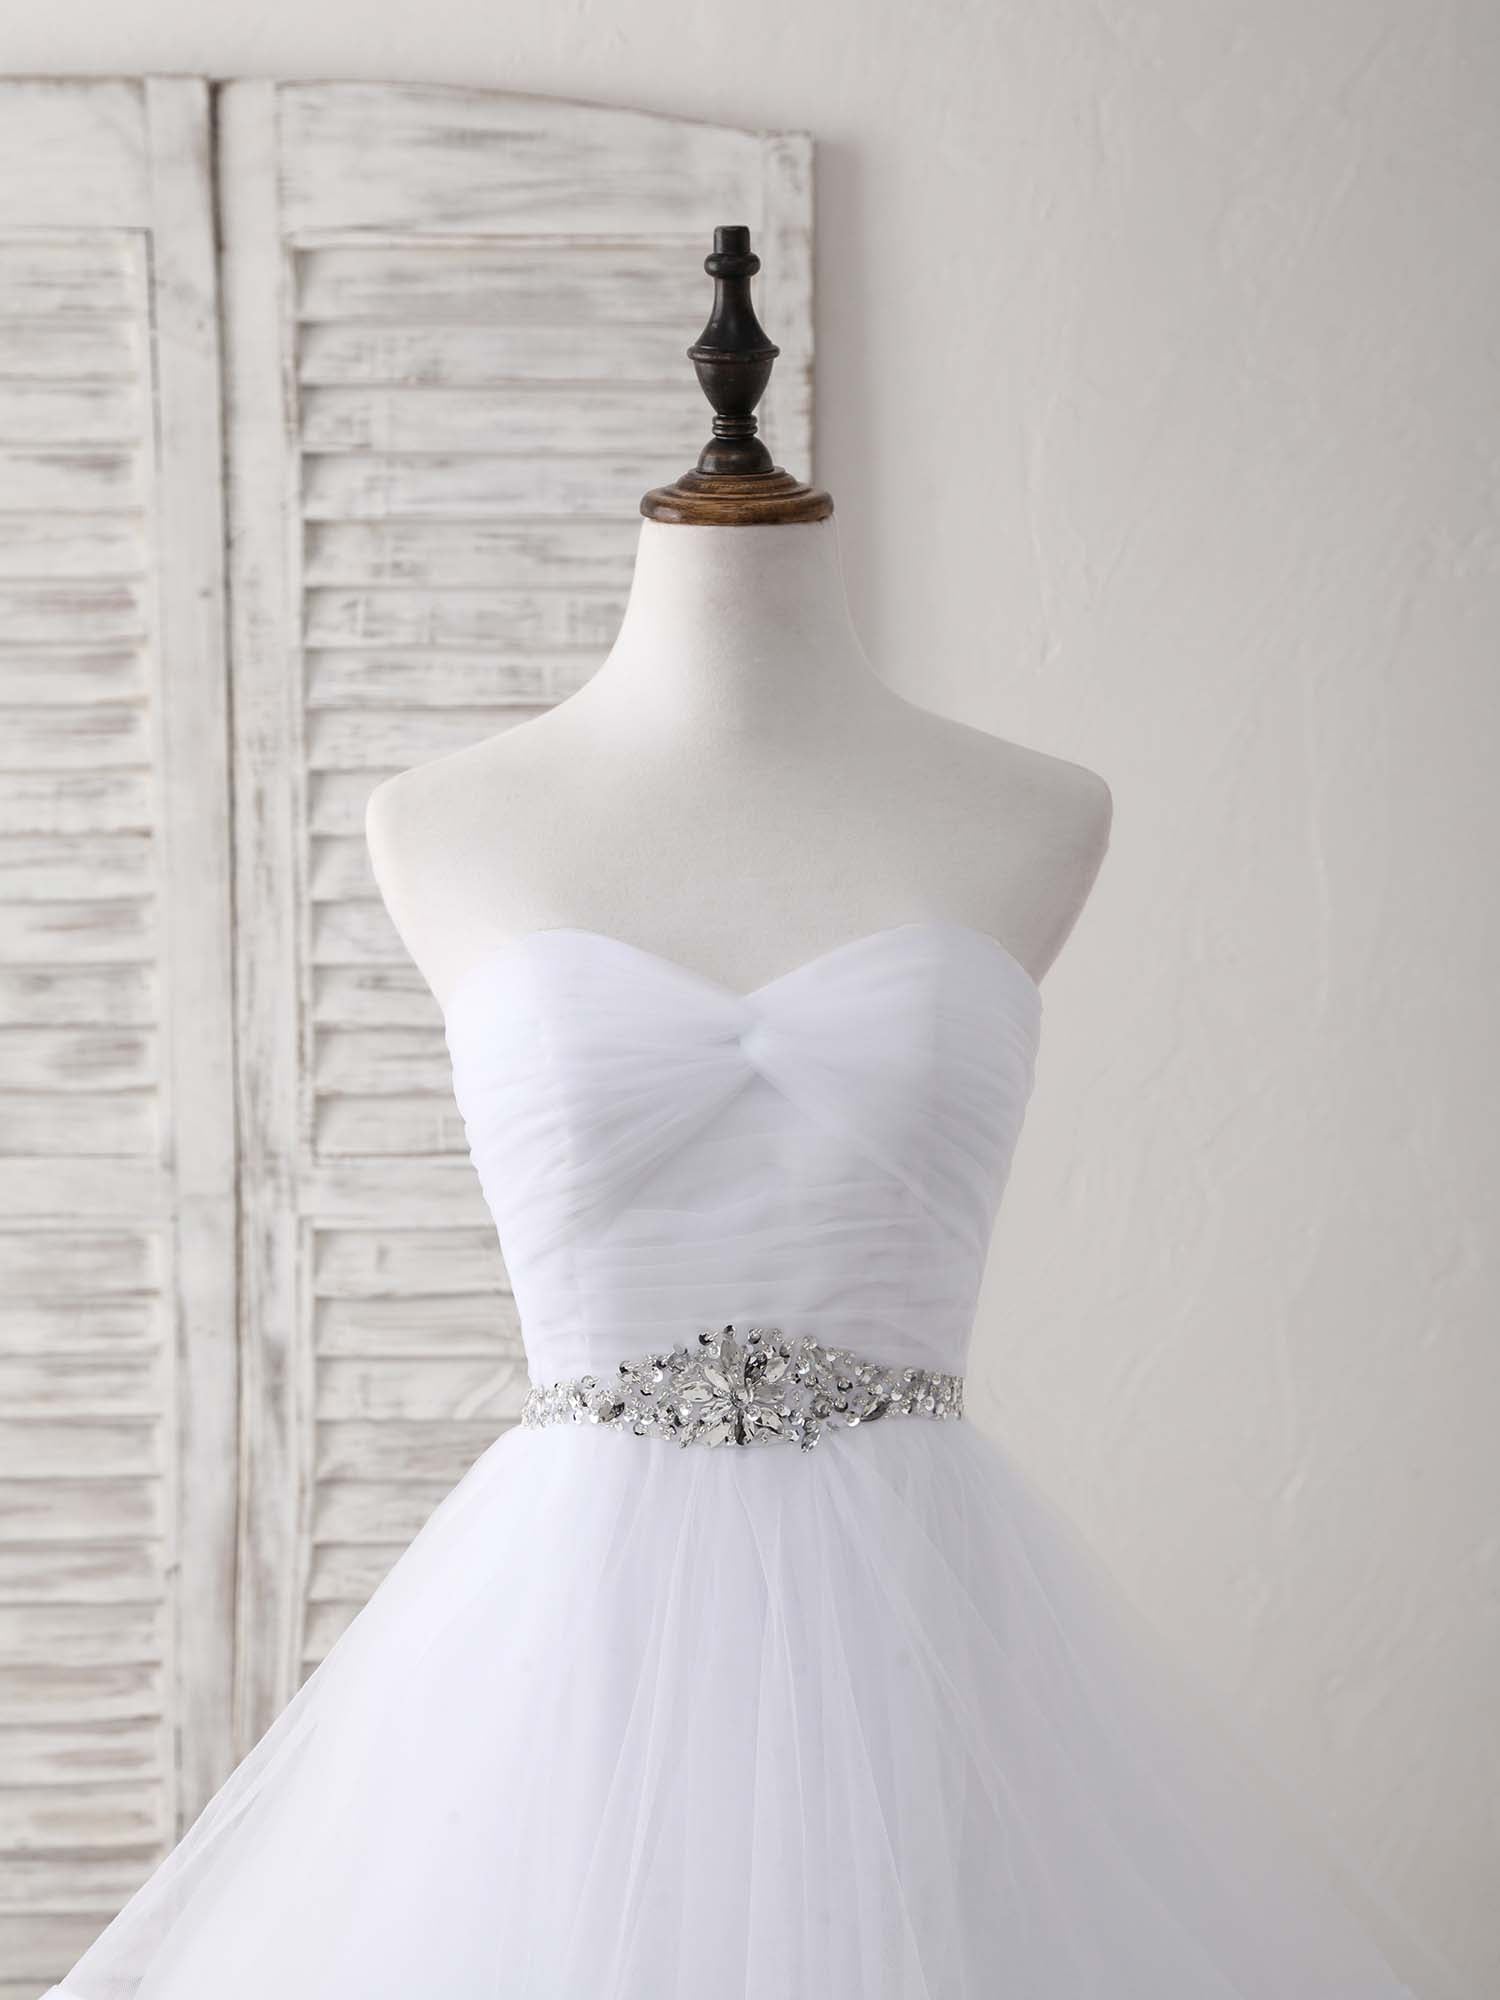 Formal Dresses For Weddings, White Sweetheart Neck Tulle Long Prom Dress, White Formal Graduation Dress